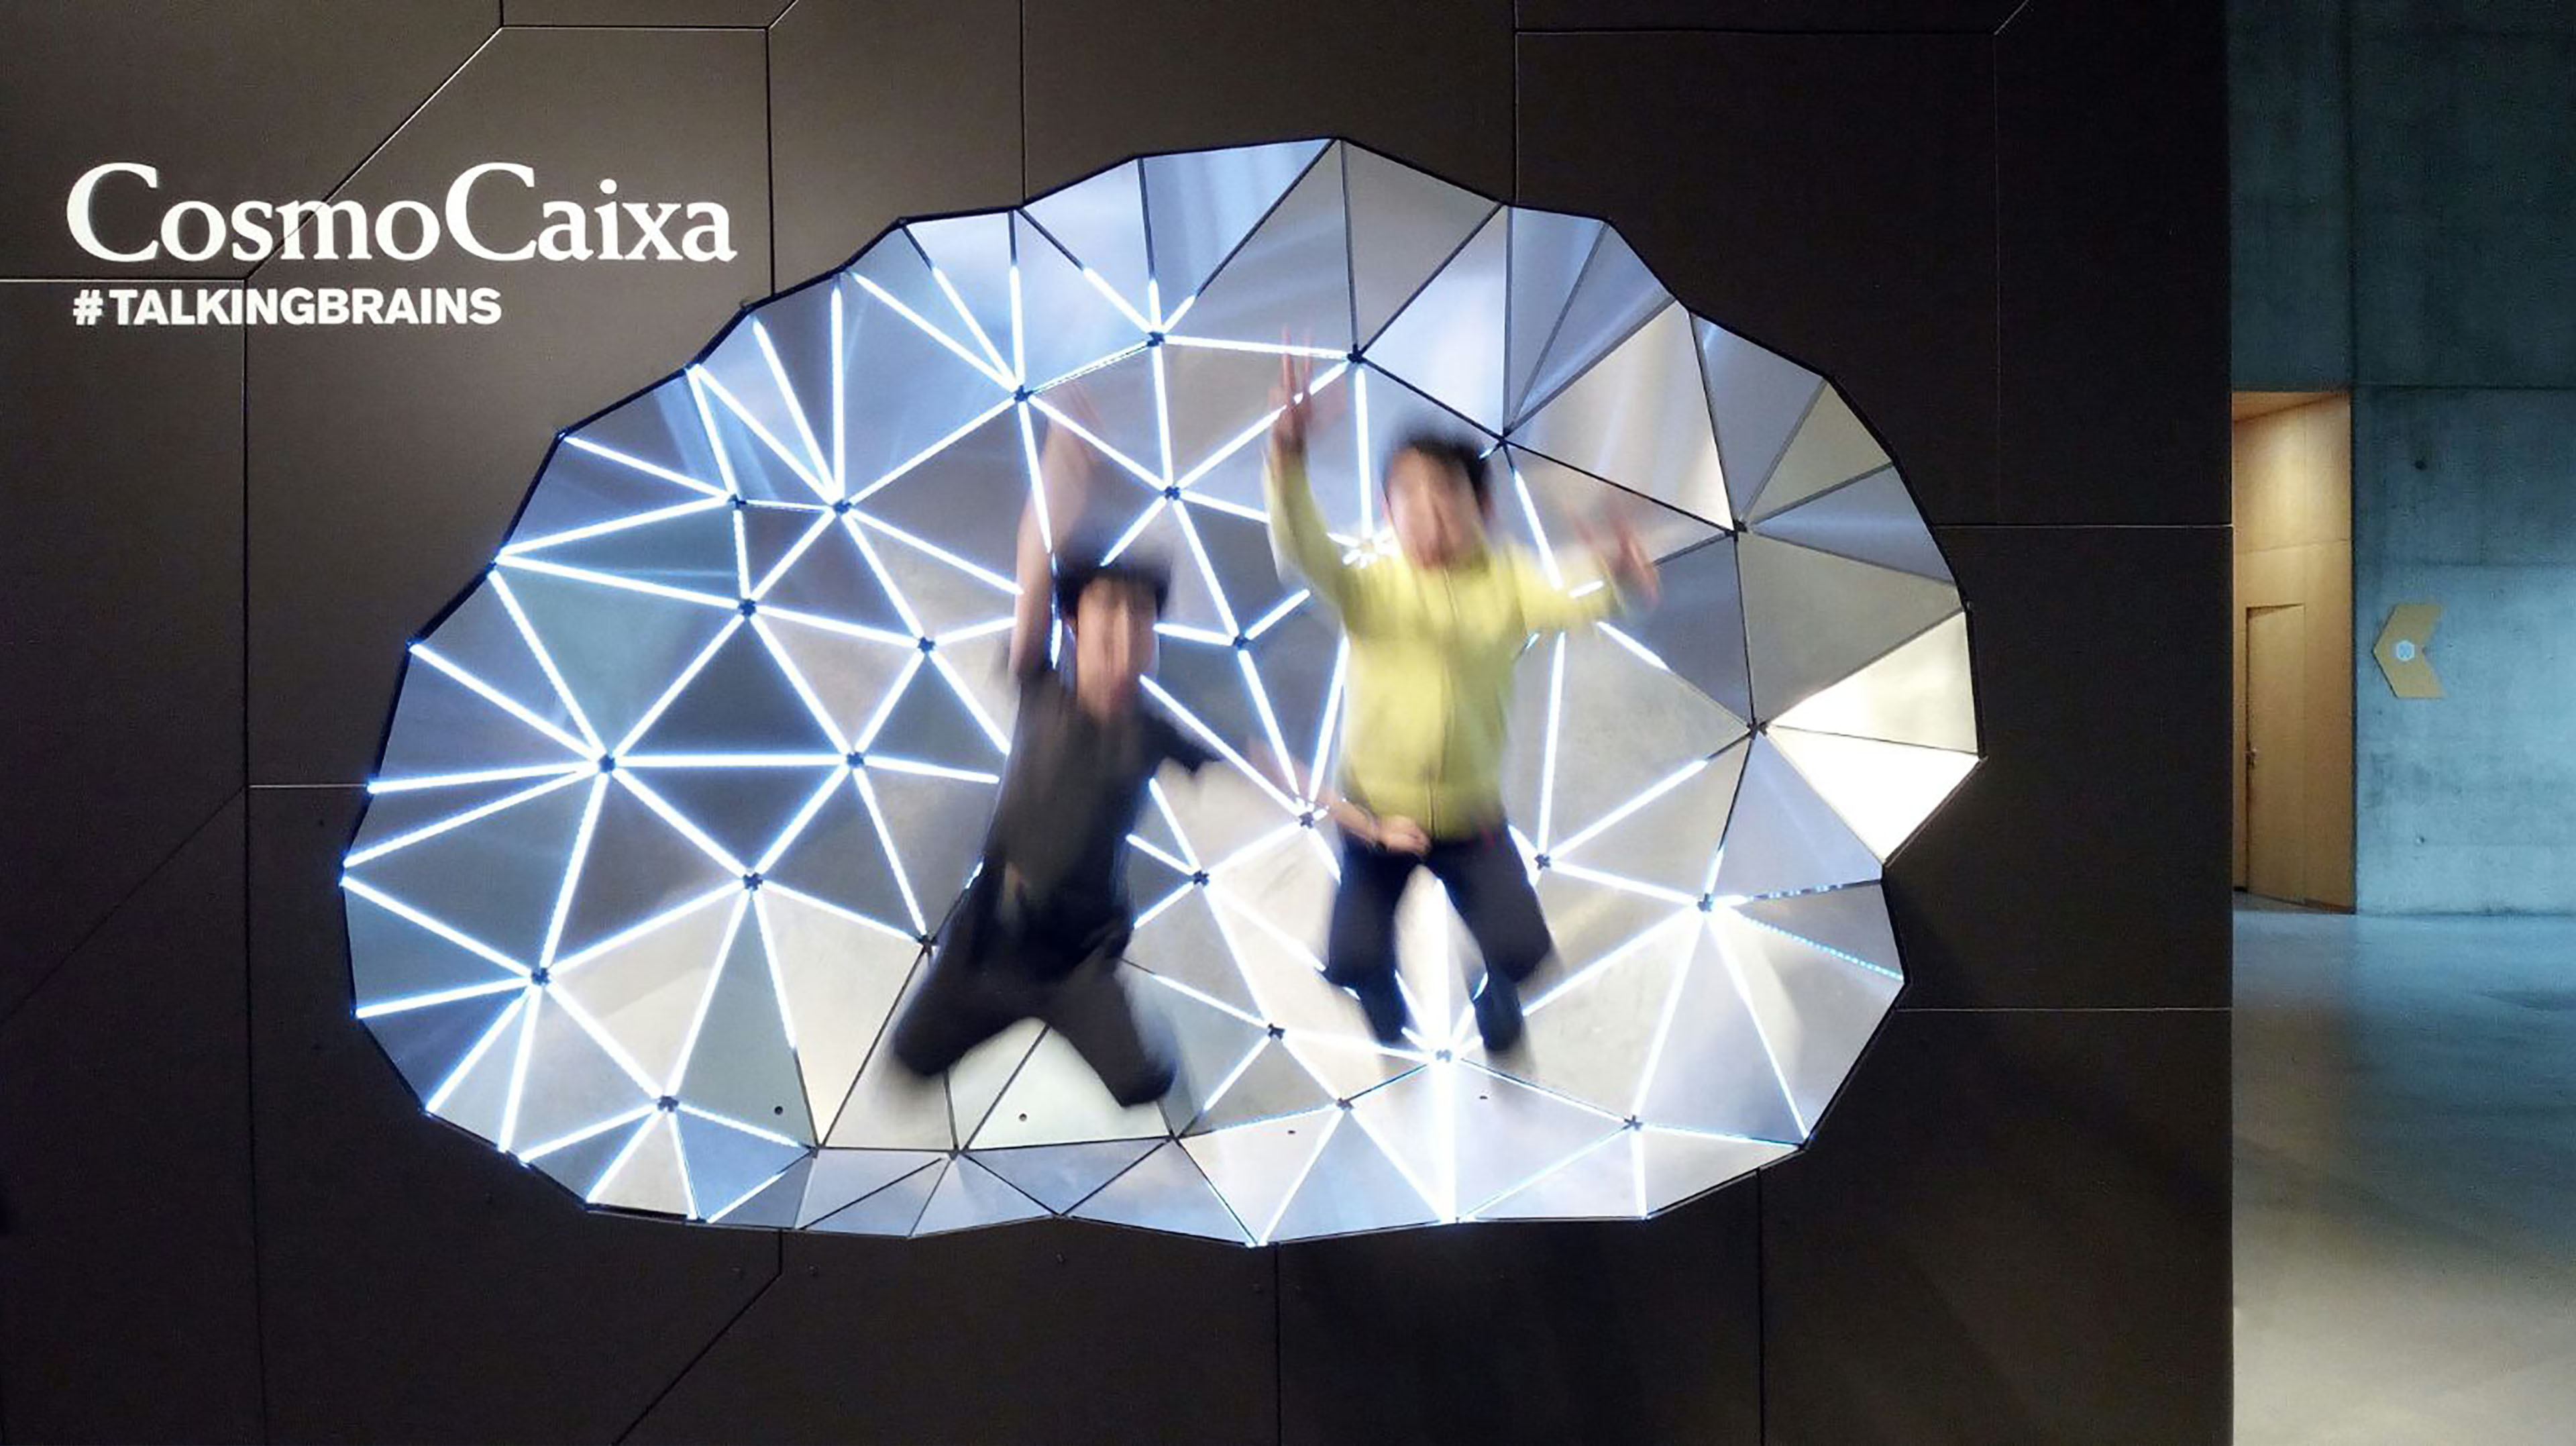 interactive-exhibition-talking-brains-cosmocaixa-barcelona-spain-image-55